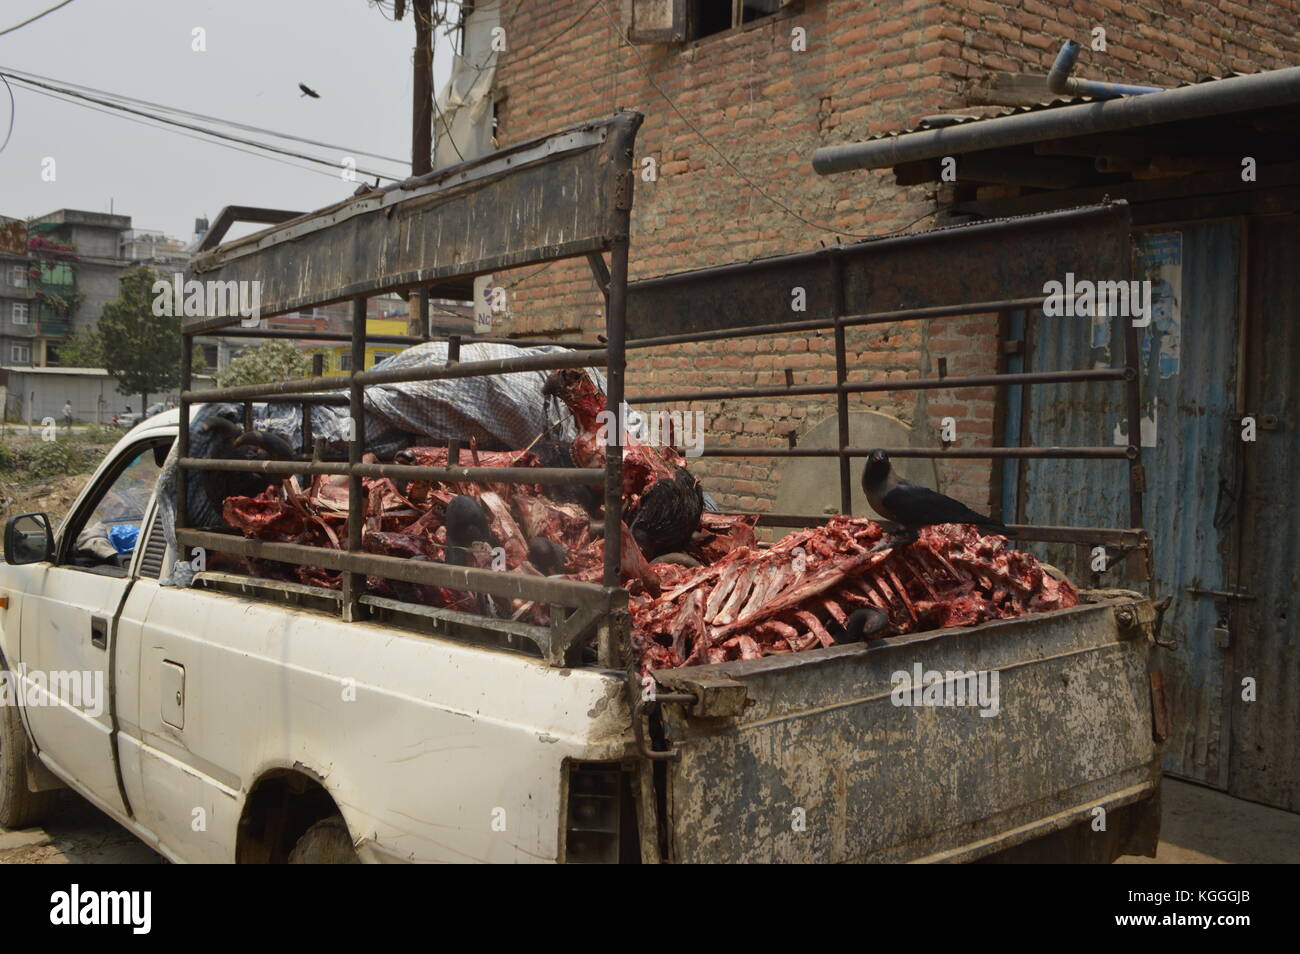 Un camión lleno de huesos y cadáveres con un pájaro sentado en una caja torácica. Un barrio Dalit de casta baja que produce carne, industria. intocables Foto de stock